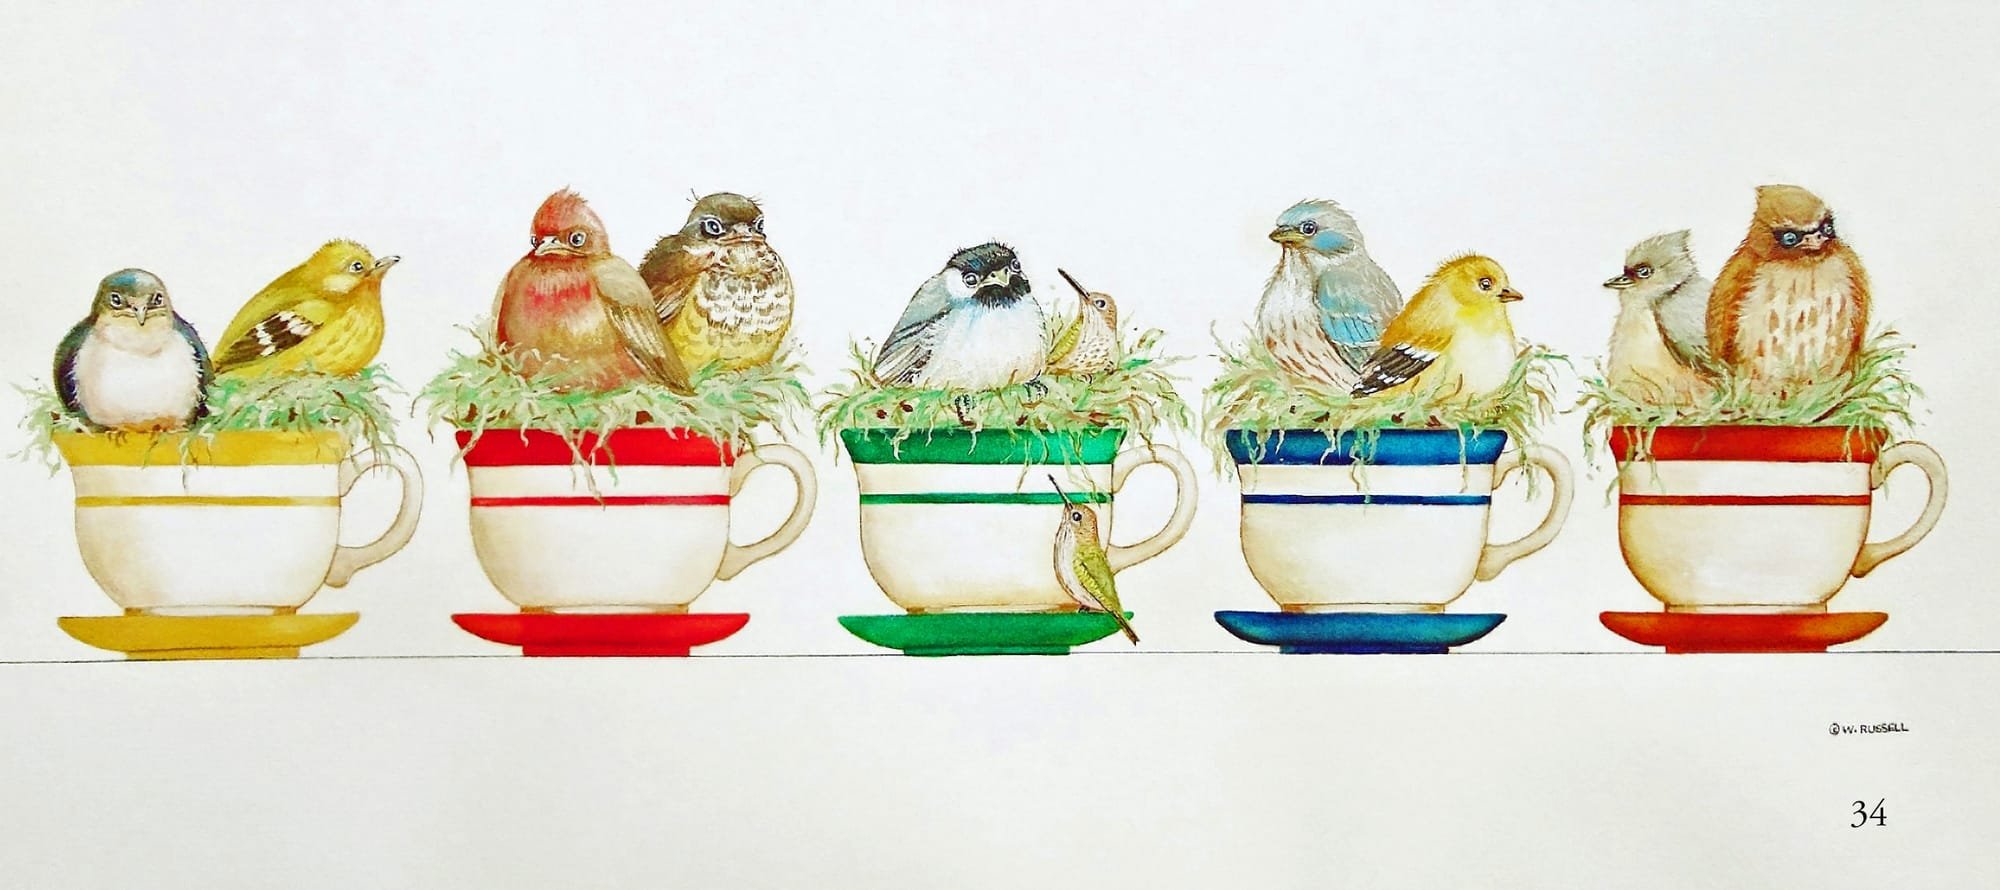 Baby Birds in Teacups